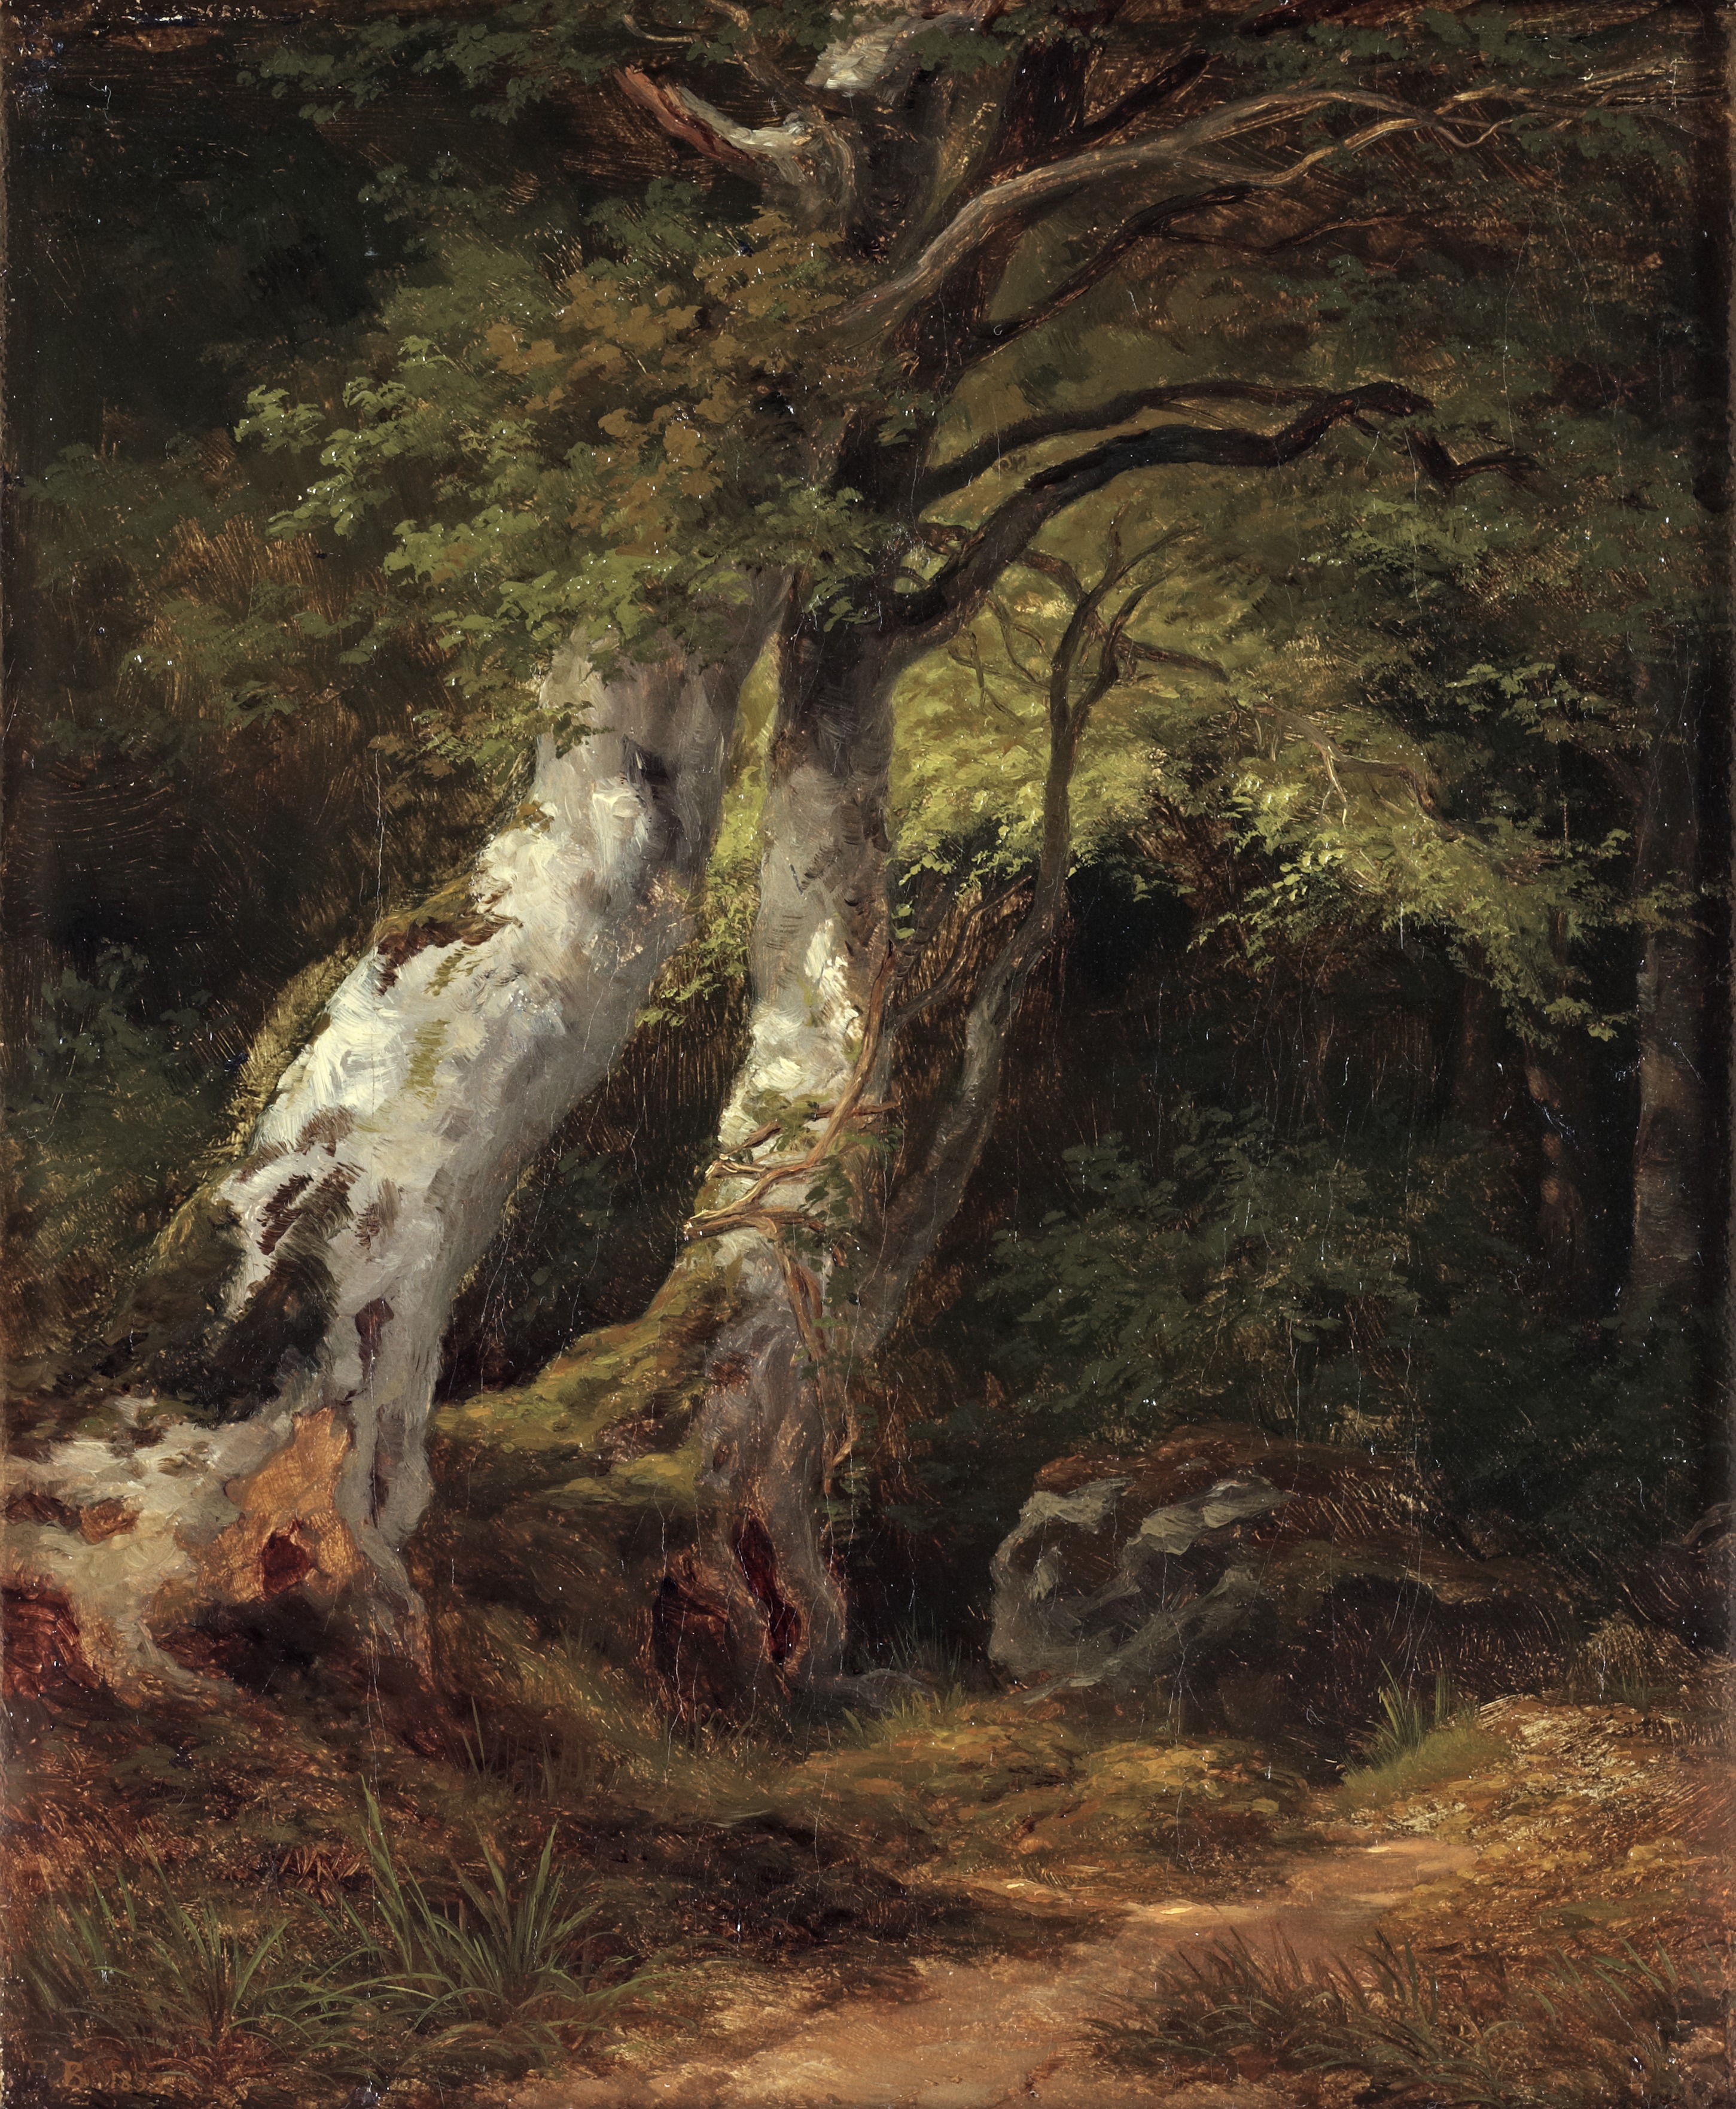 Берг художник. Johan Edvard Bergh (1828–1880) — шведский художник.